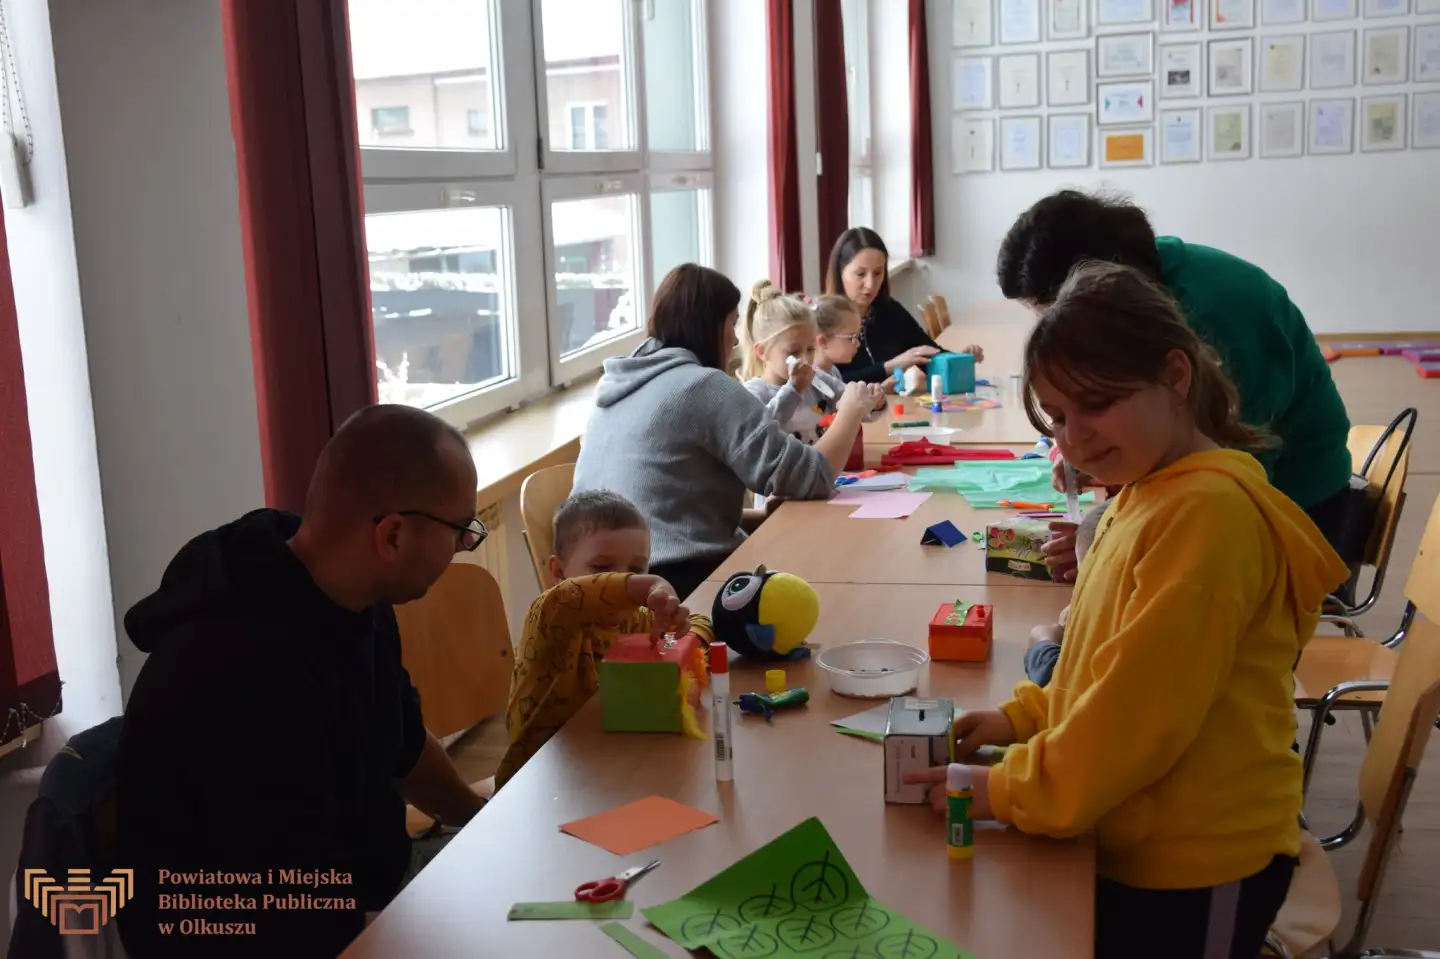 Zdjęcie przedstawia siedzące przy stoliku dzieci wraz z rodzicami.m Wspólnie wykonują kolorowe skarbonki. Na stoliku leżą kolorowe materiały plastyczne.